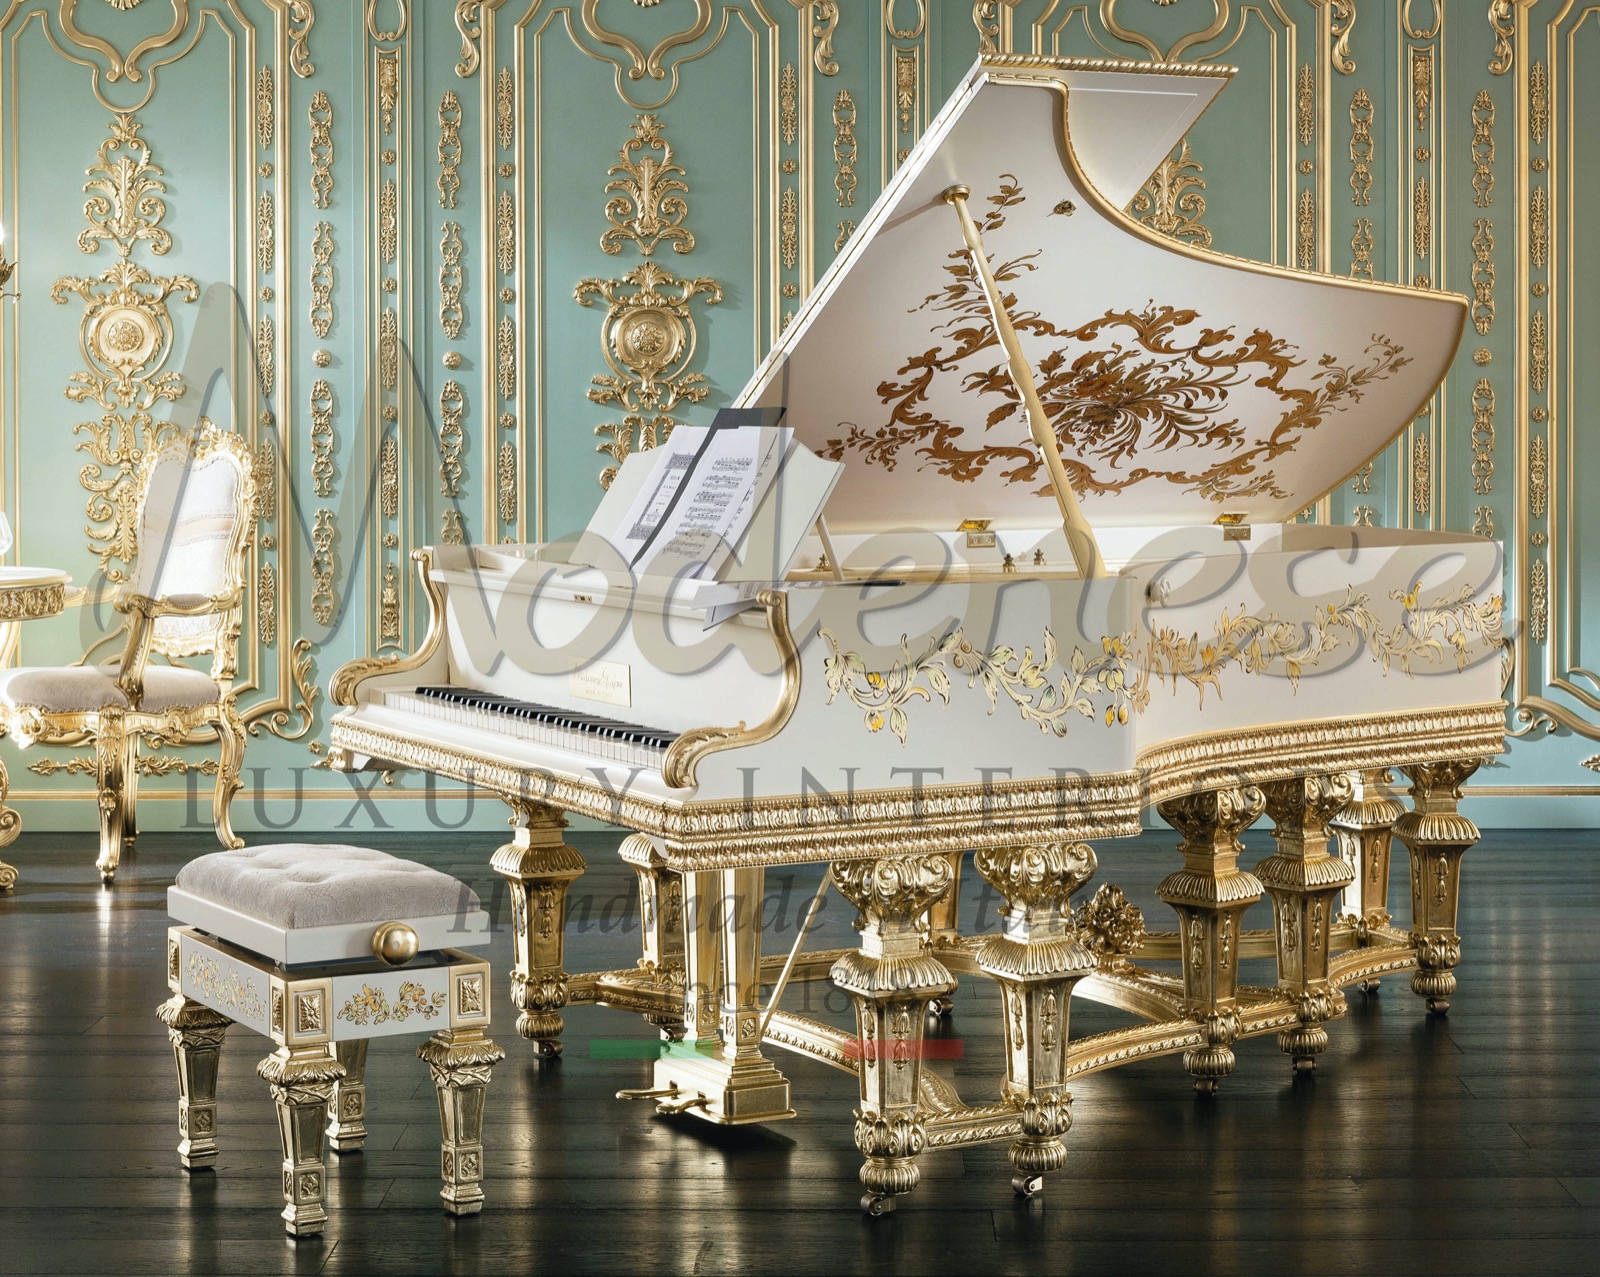 ديكورات داخلية ايطالية فاخرة - انتاج حرفي - موسيقى - بيانو - ترميم -Steinway- Bernstein -blunter - ديكور كلاسيكي - صناعة يدوية - ورق الذهب